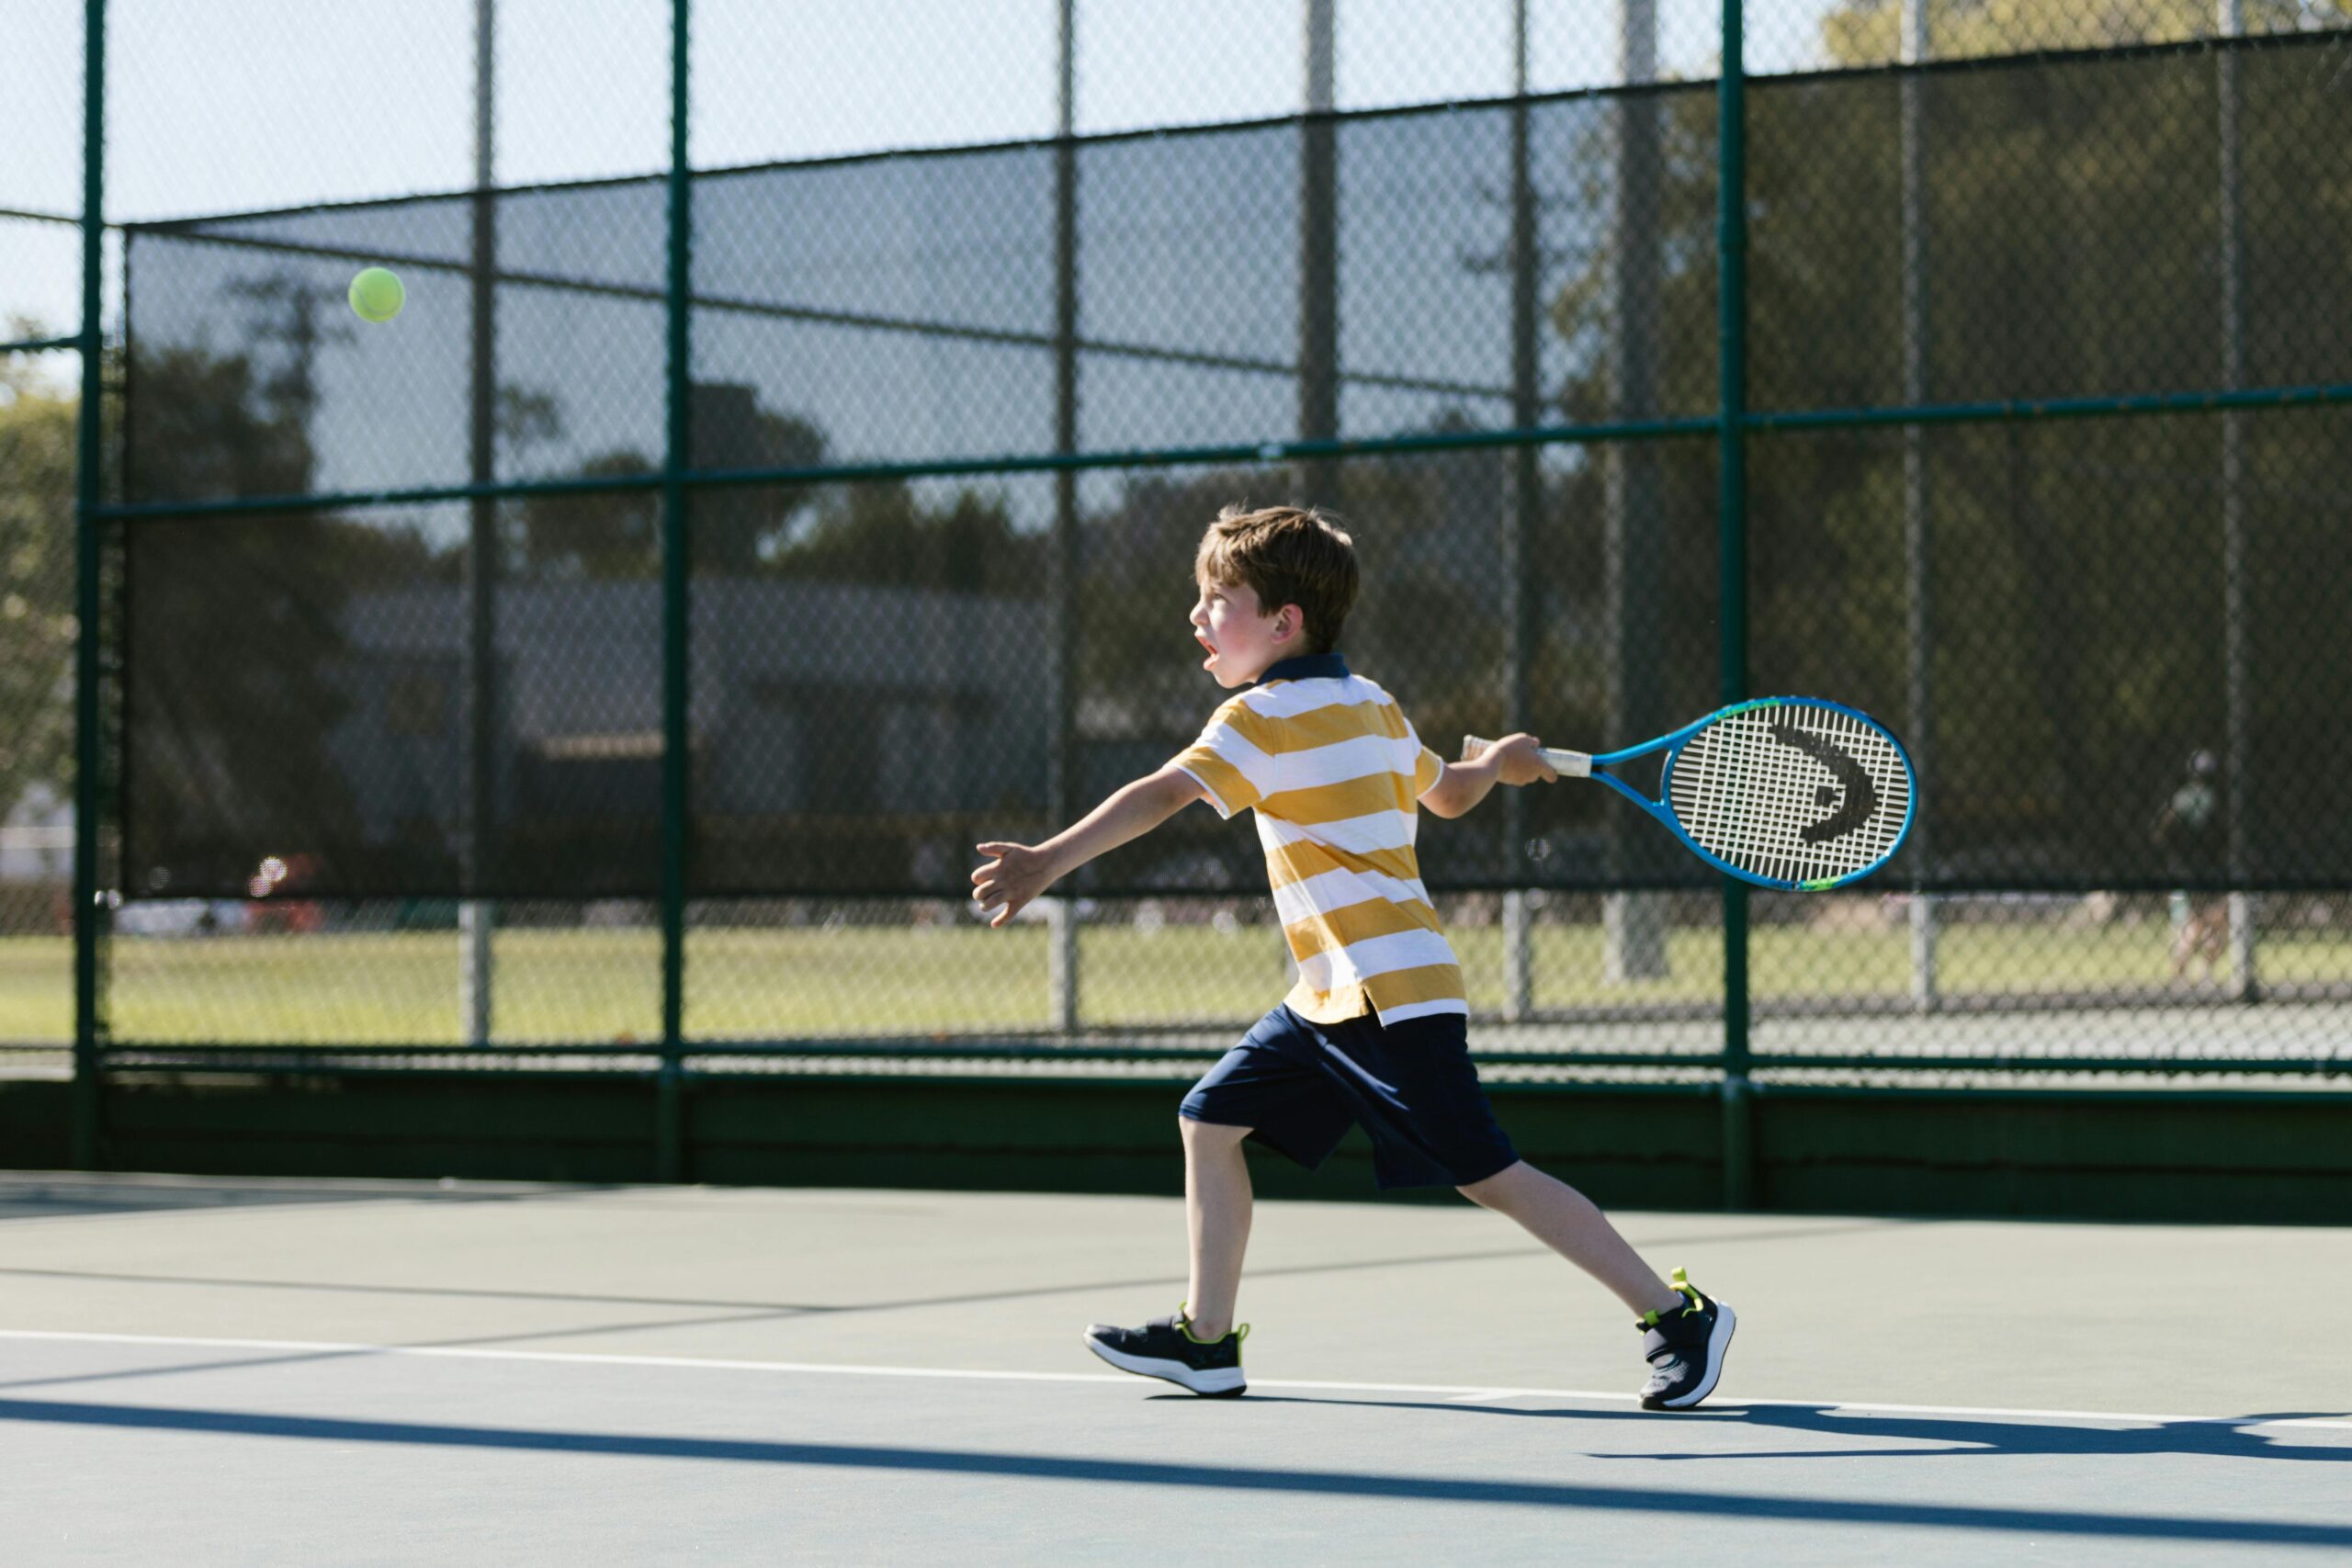 Junge beim Tennispiel